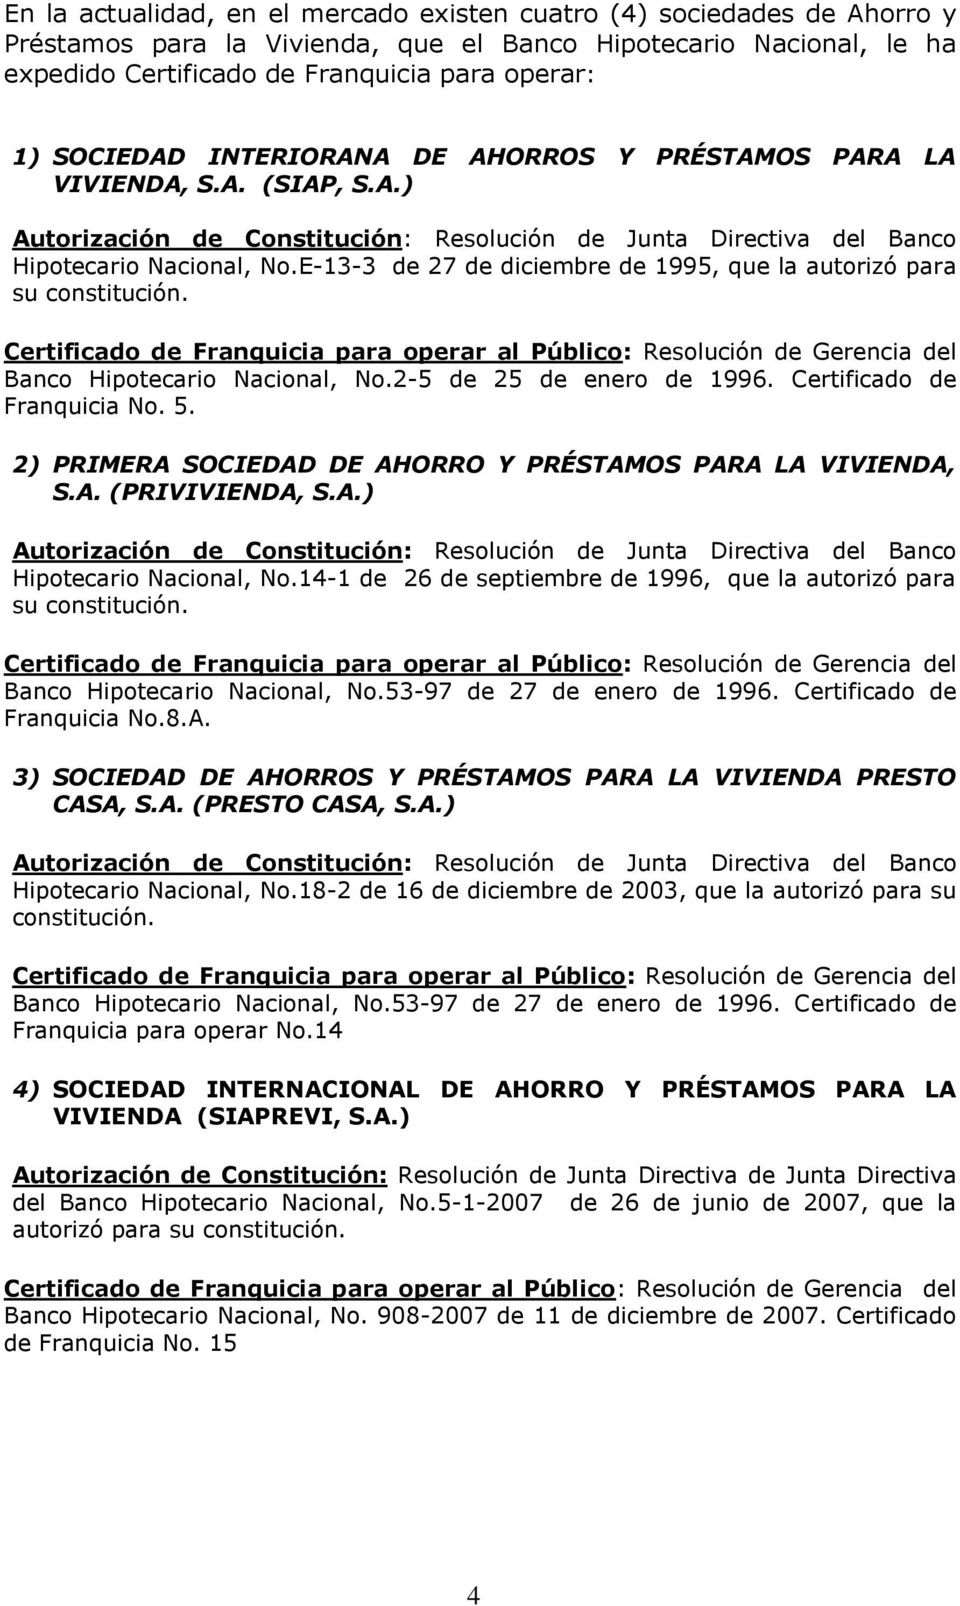 E-13-3 de 27 de diciembre de 1995, que la autorizó para su constitución. Certificado de Franquicia para operar al Público: Resolución de Gerencia del Banco Hipotecario Nacional, No.